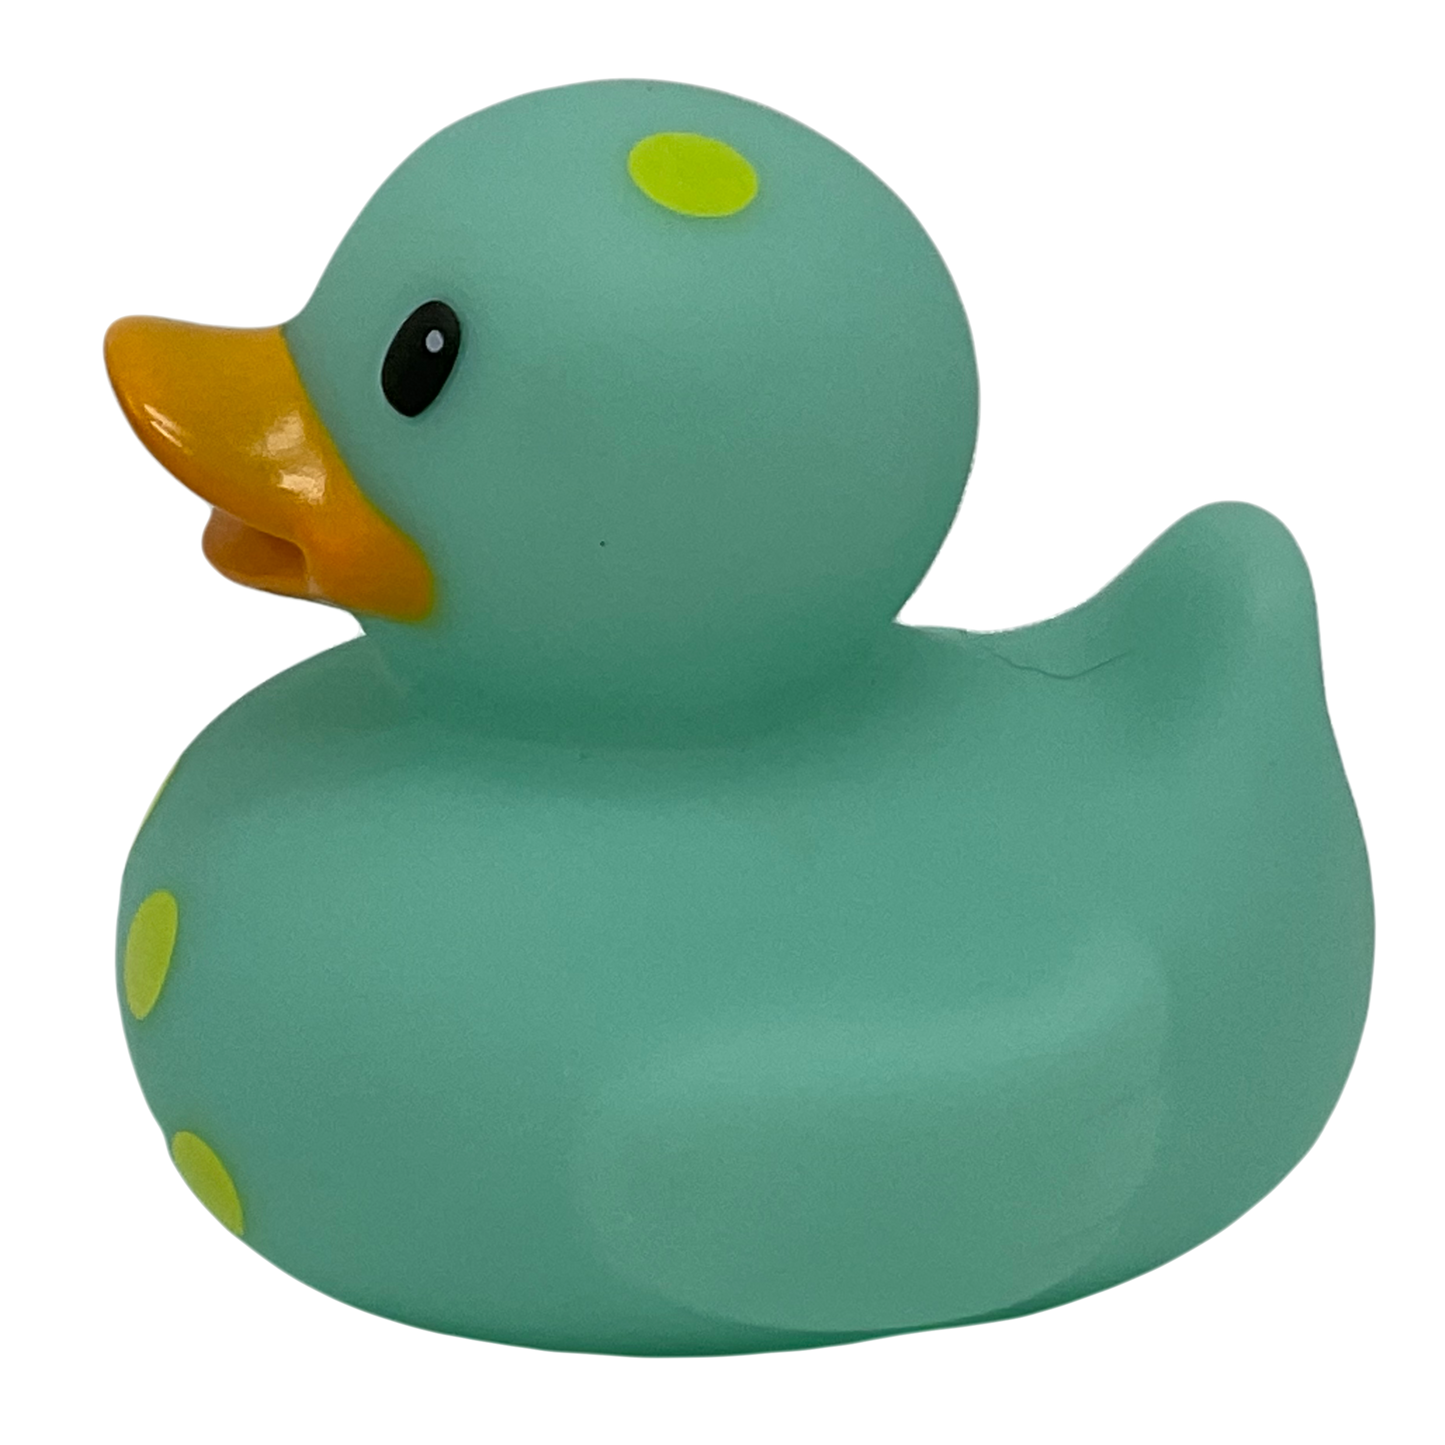 Mint Green & Yellow Polka Dot 3" Rubber Duck